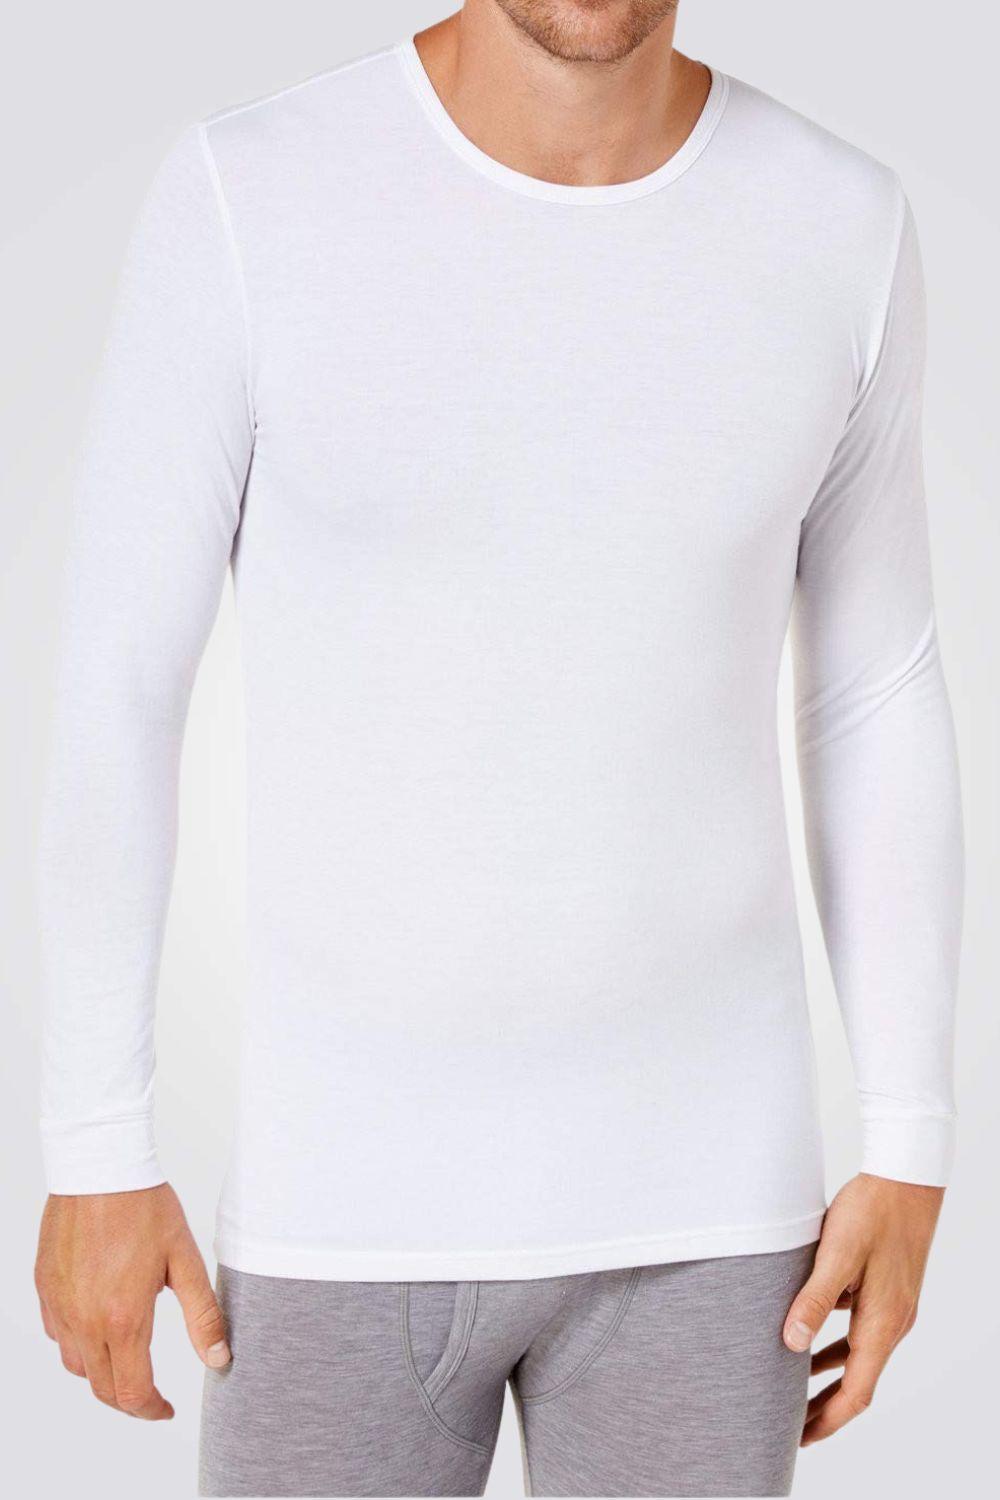 COOL 32 - חולצה תרמית לגבר בצבע לבן - MASHBIR//365